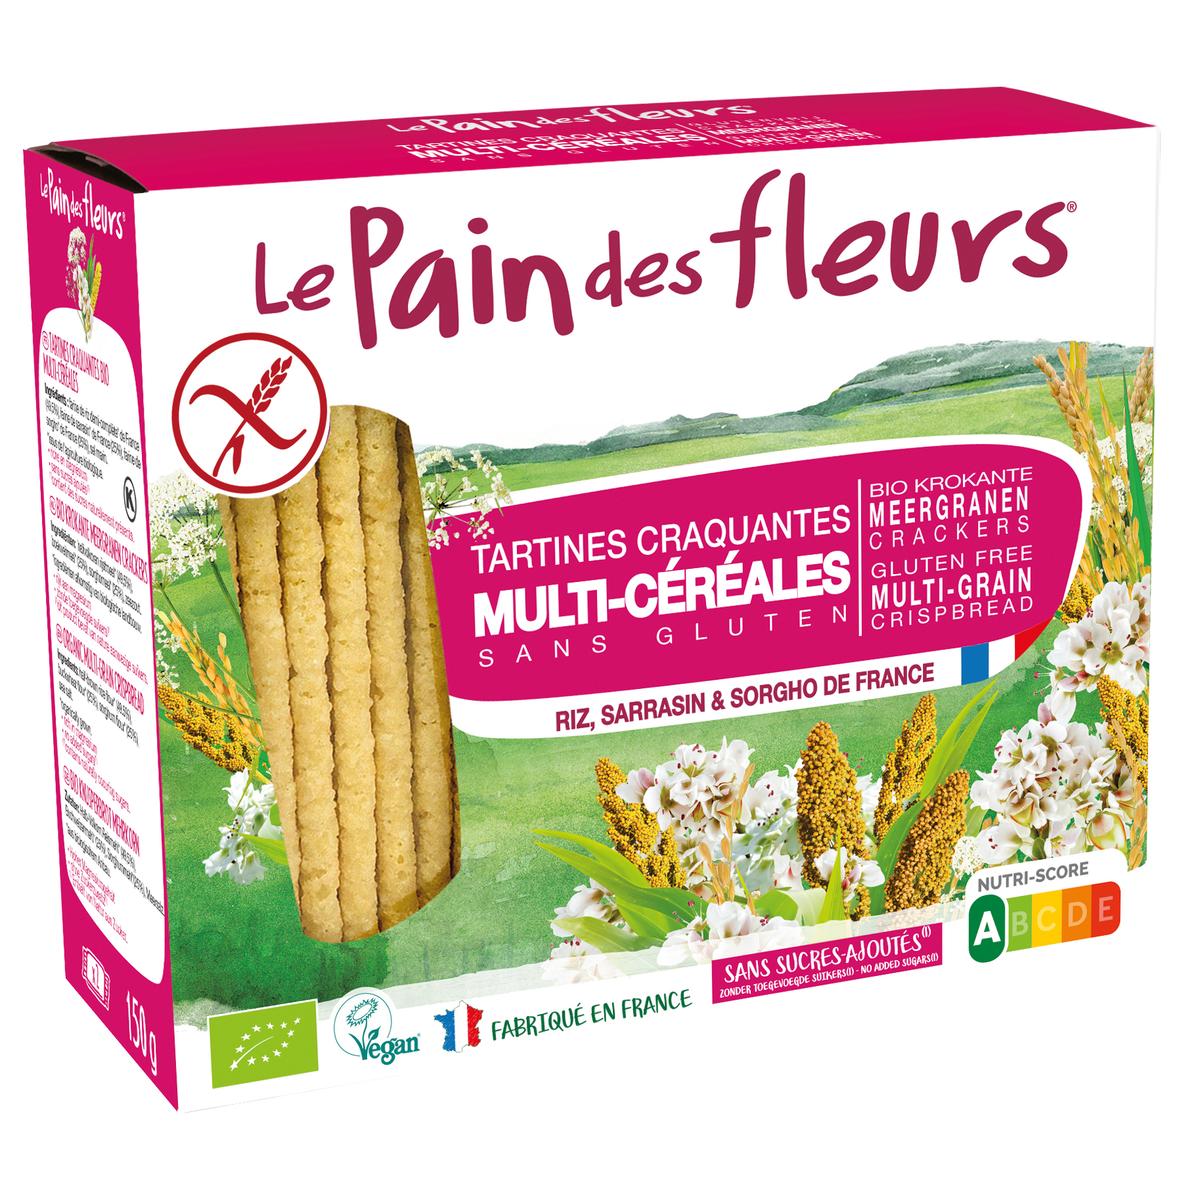 Promo Le pain des fleurs Tartines Multi-Céréales, sans gluten, Bio